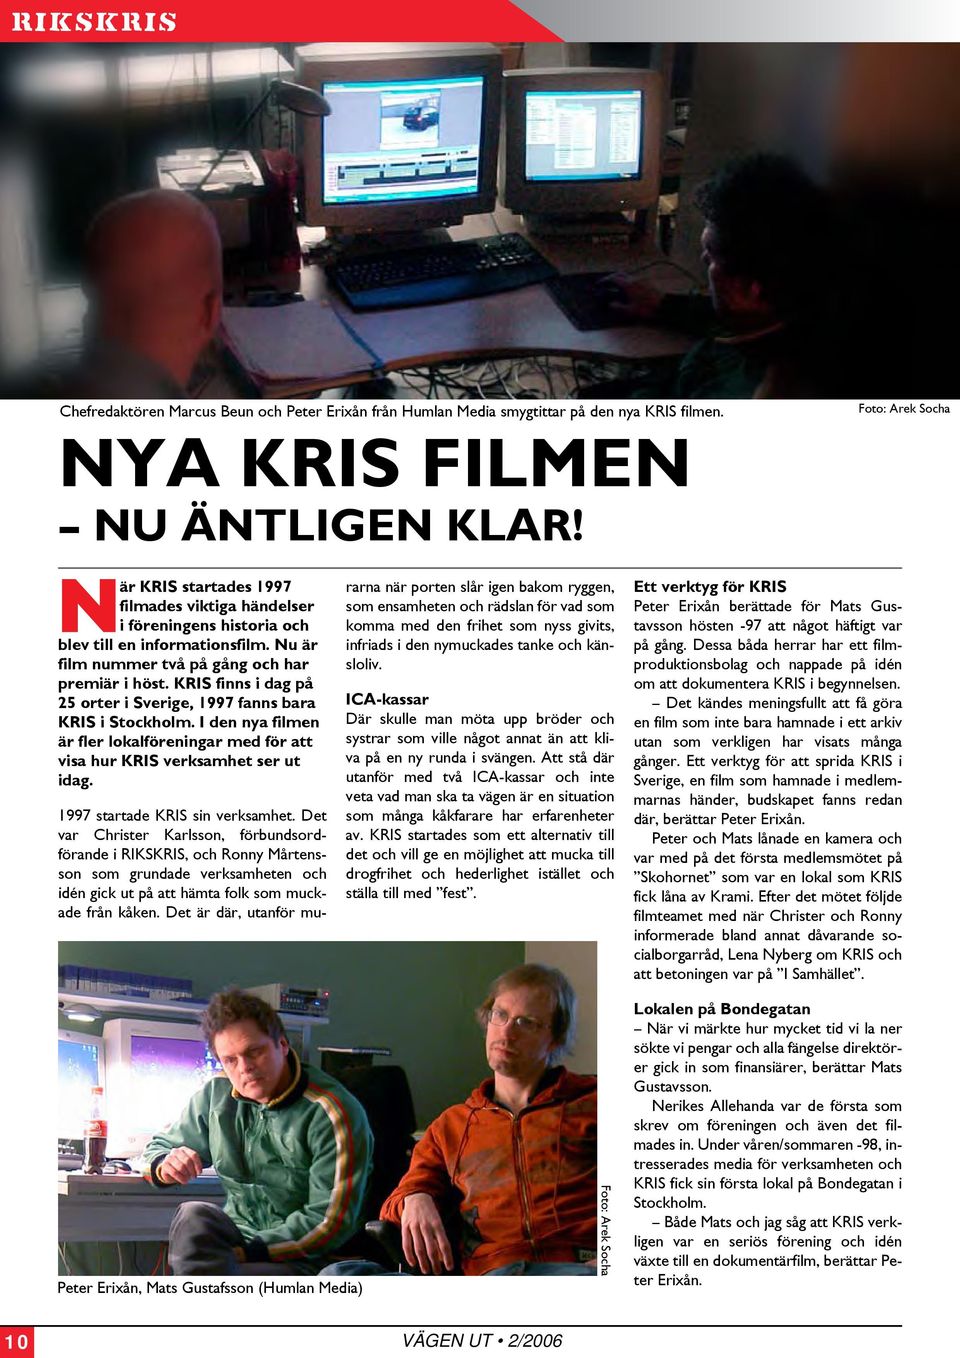 KRIS finns i dag på 25 orter i Sverige, 1997 fanns bara KRIS i Stockholm. I den nya filmen är fler lokalföreningar med för att visa hur KRIS verksamhet ser ut idag. 1997 startade KRIS sin verksamhet.